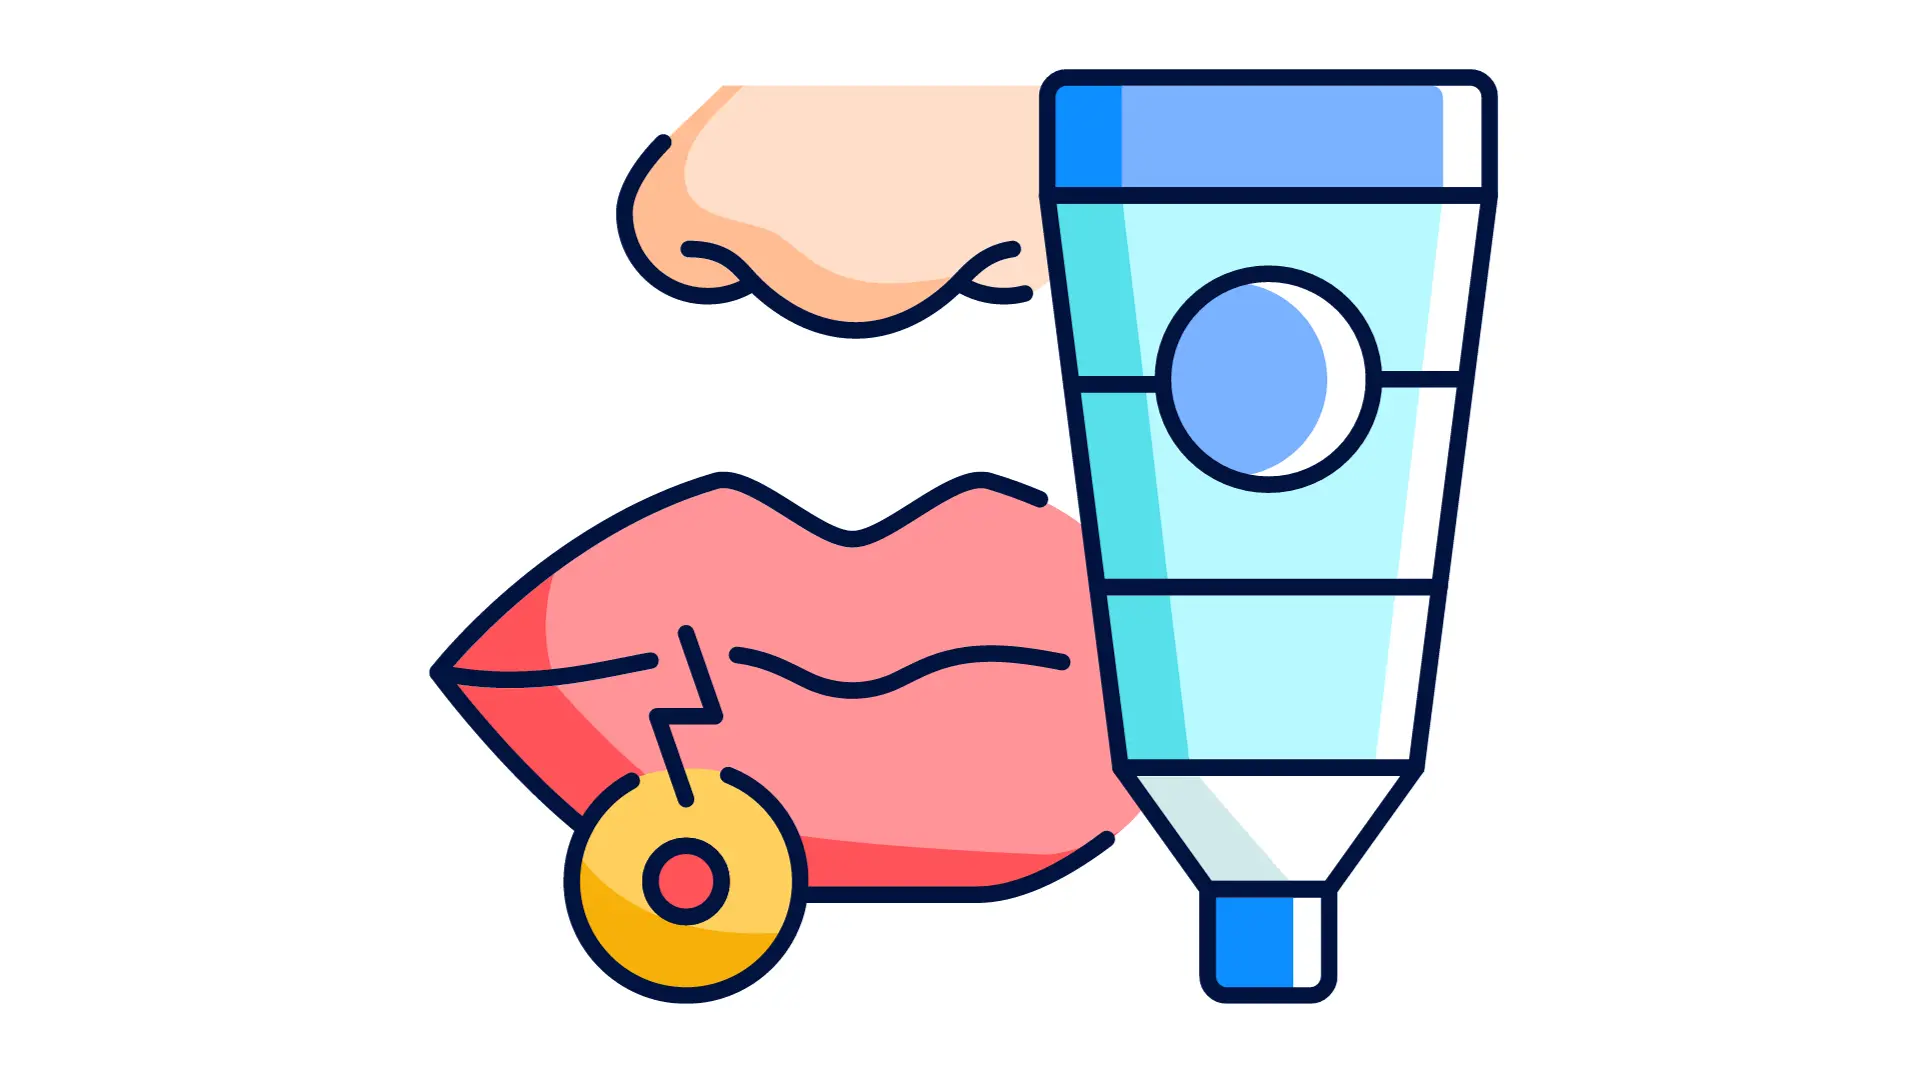 Grafico del tratamiento del herpes labial con pomadas de aciclovir topico y parches hidrocoloides de compeed